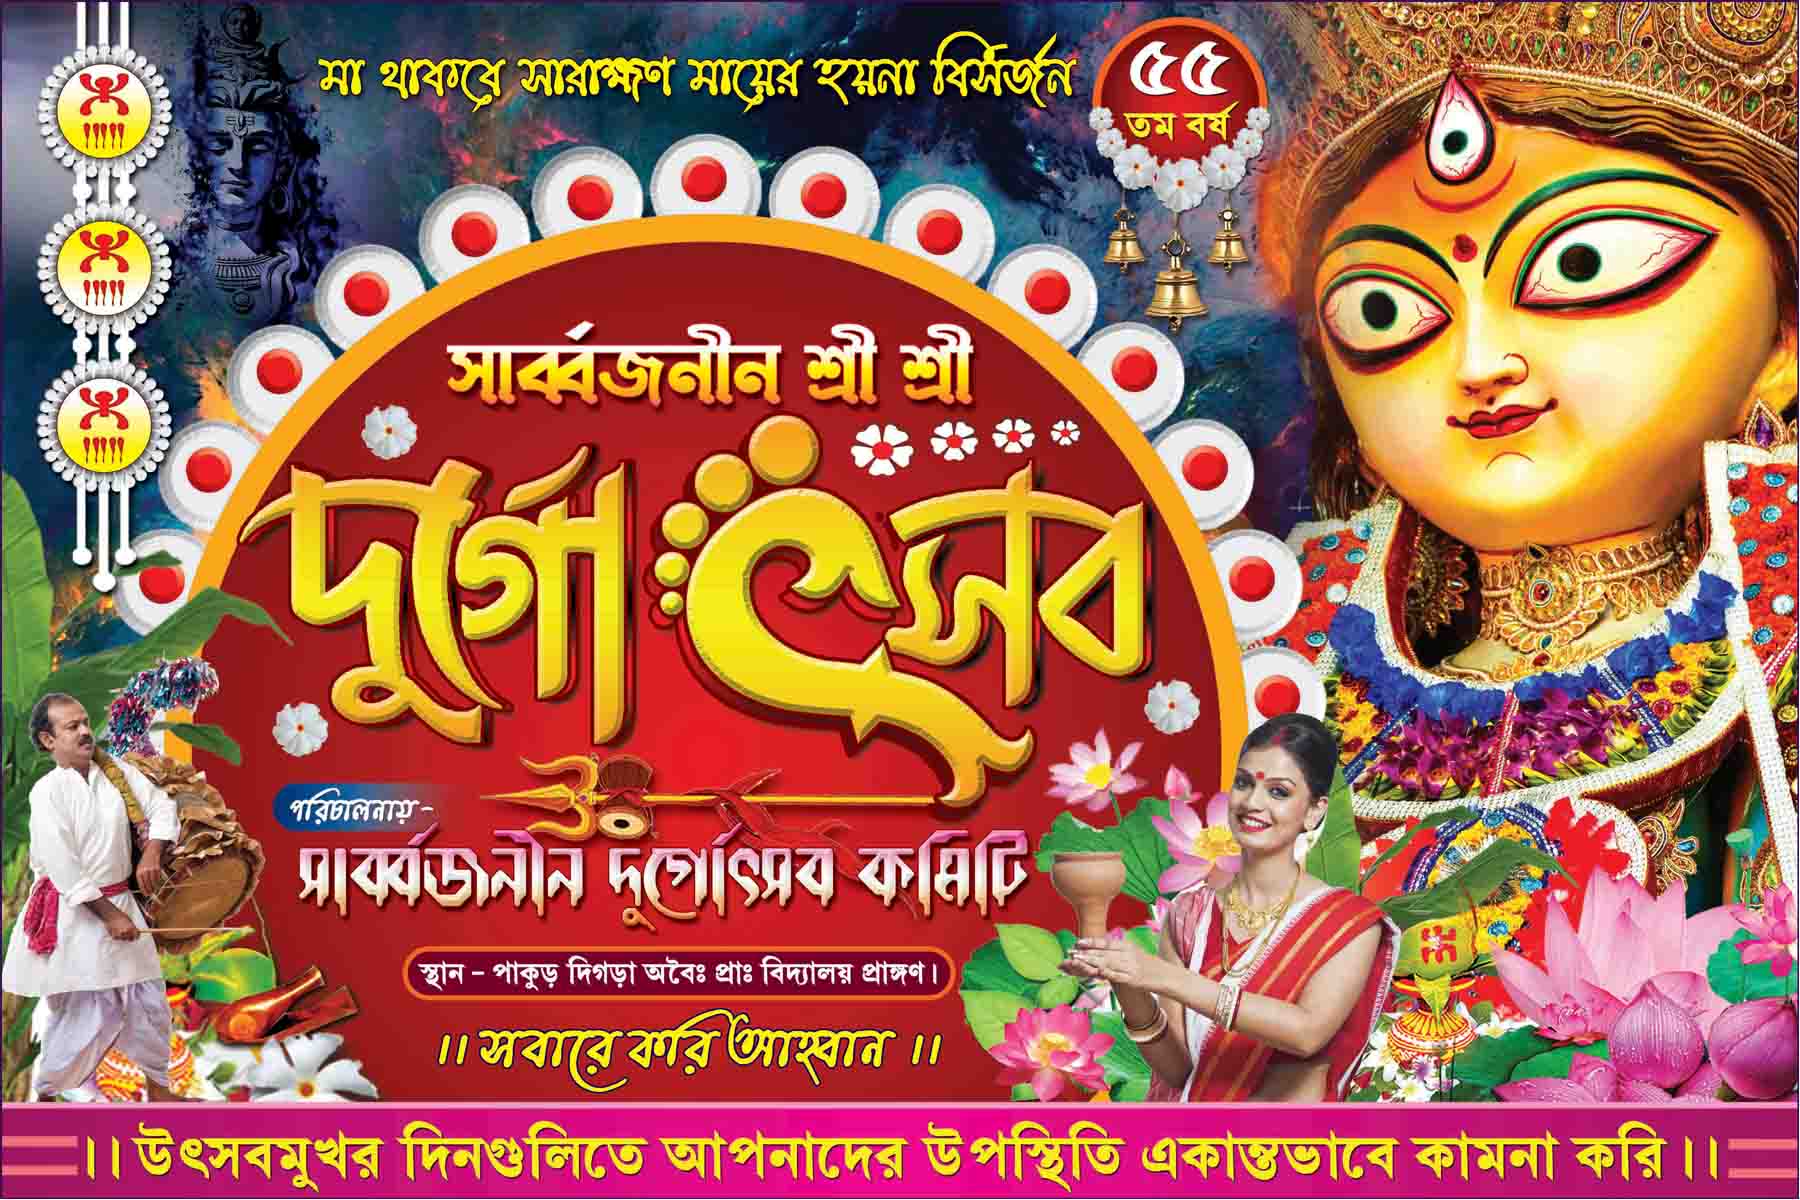 Informasi Tentang Durga puja banner psd file free download - layarkaca21